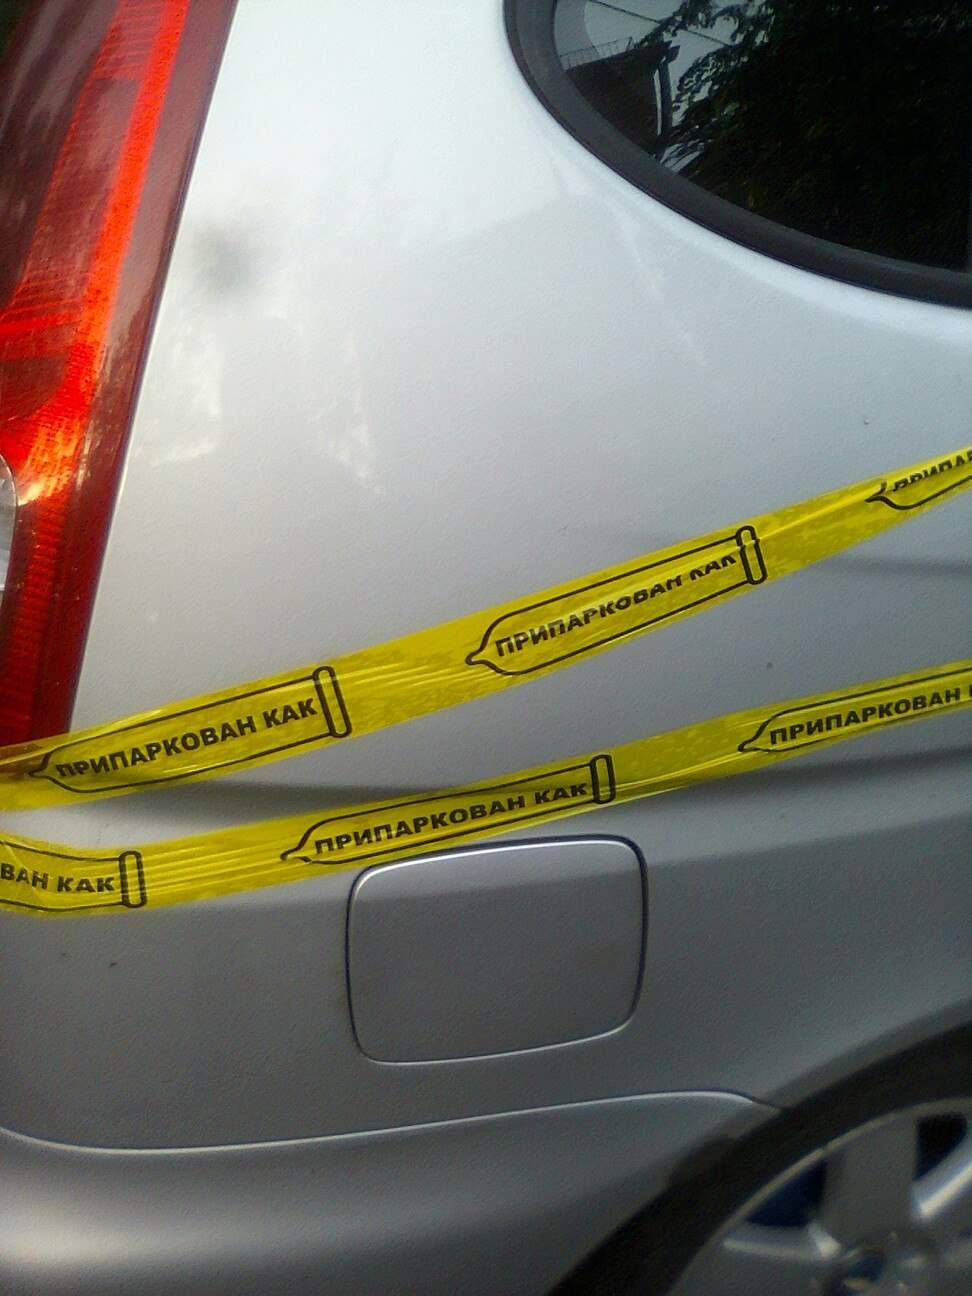 "Мудоскотч": в Киеве нашли новый способ как отомстить мастерам парковки (фото)